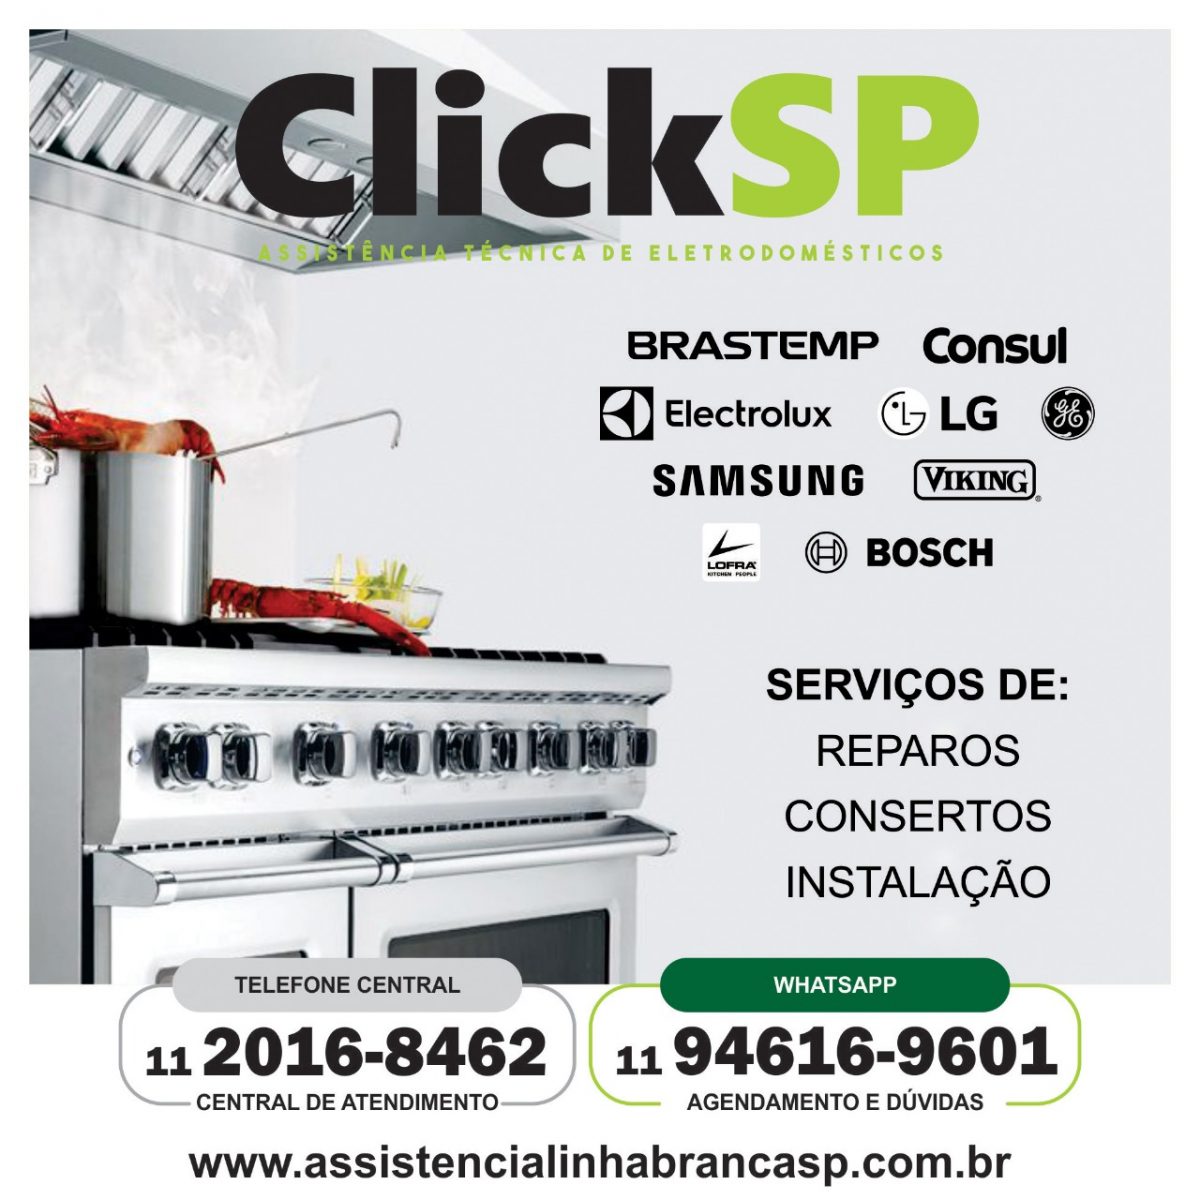 click-fogao-marcas-assistencialinhabrancasp.com.br